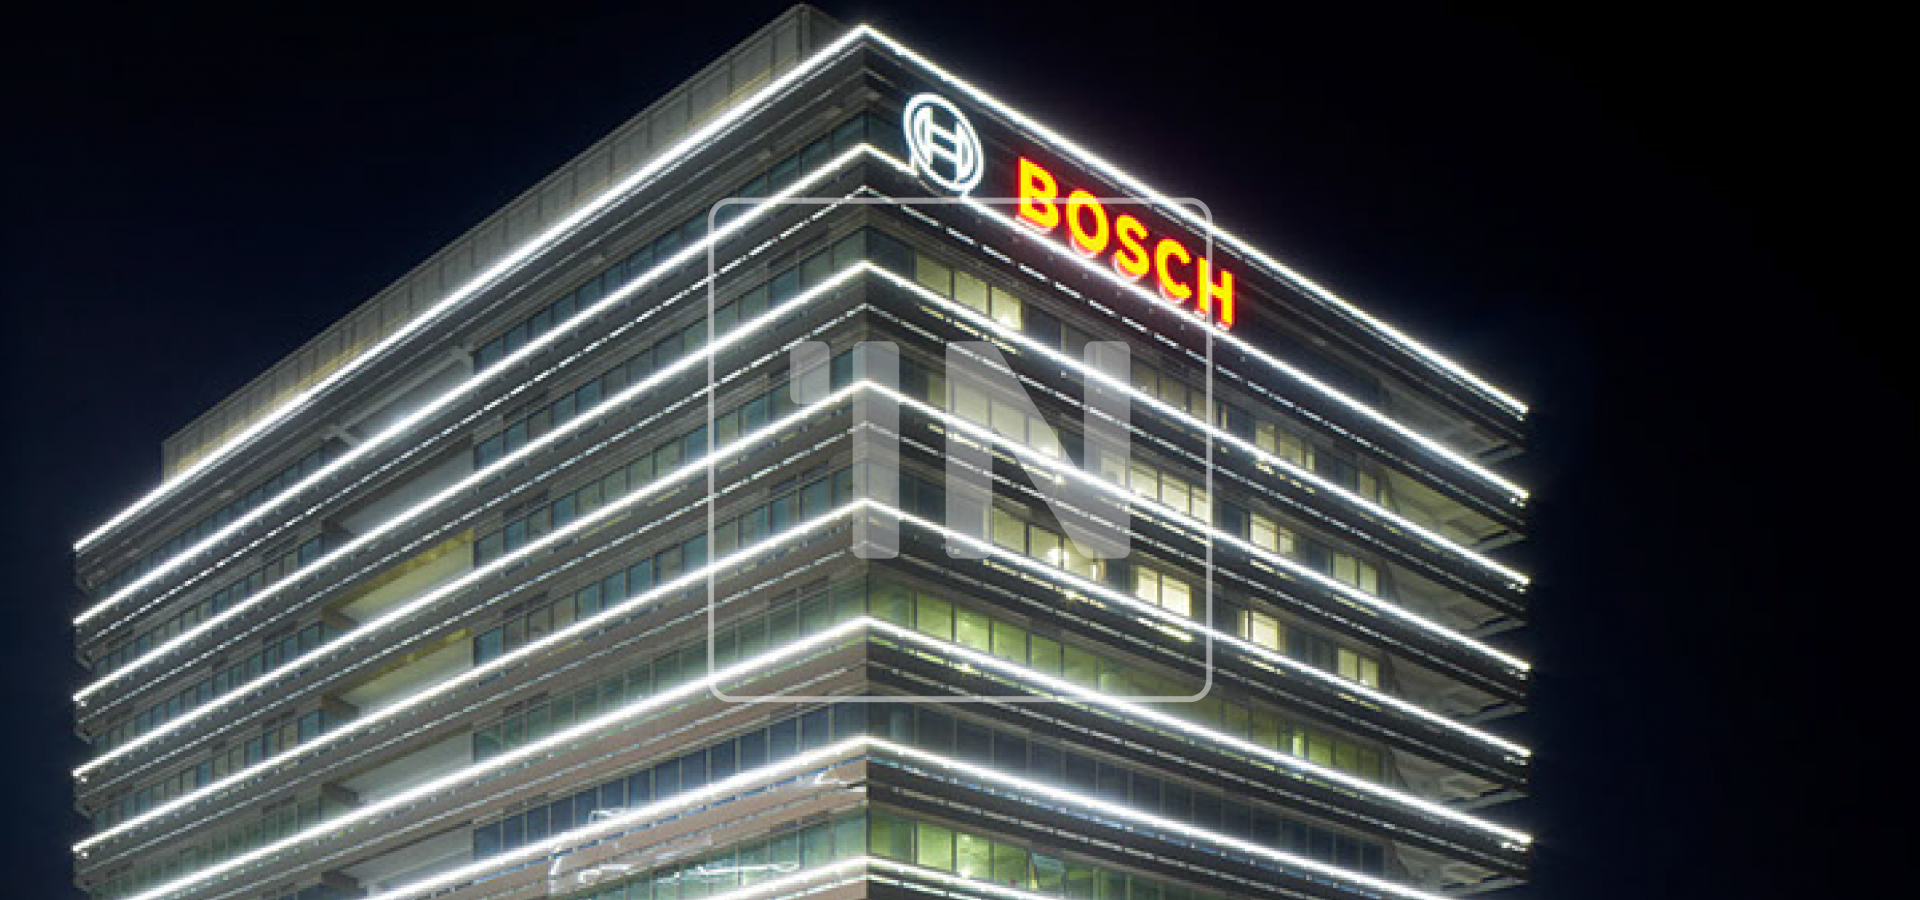 Bosch Office Küçükyalı